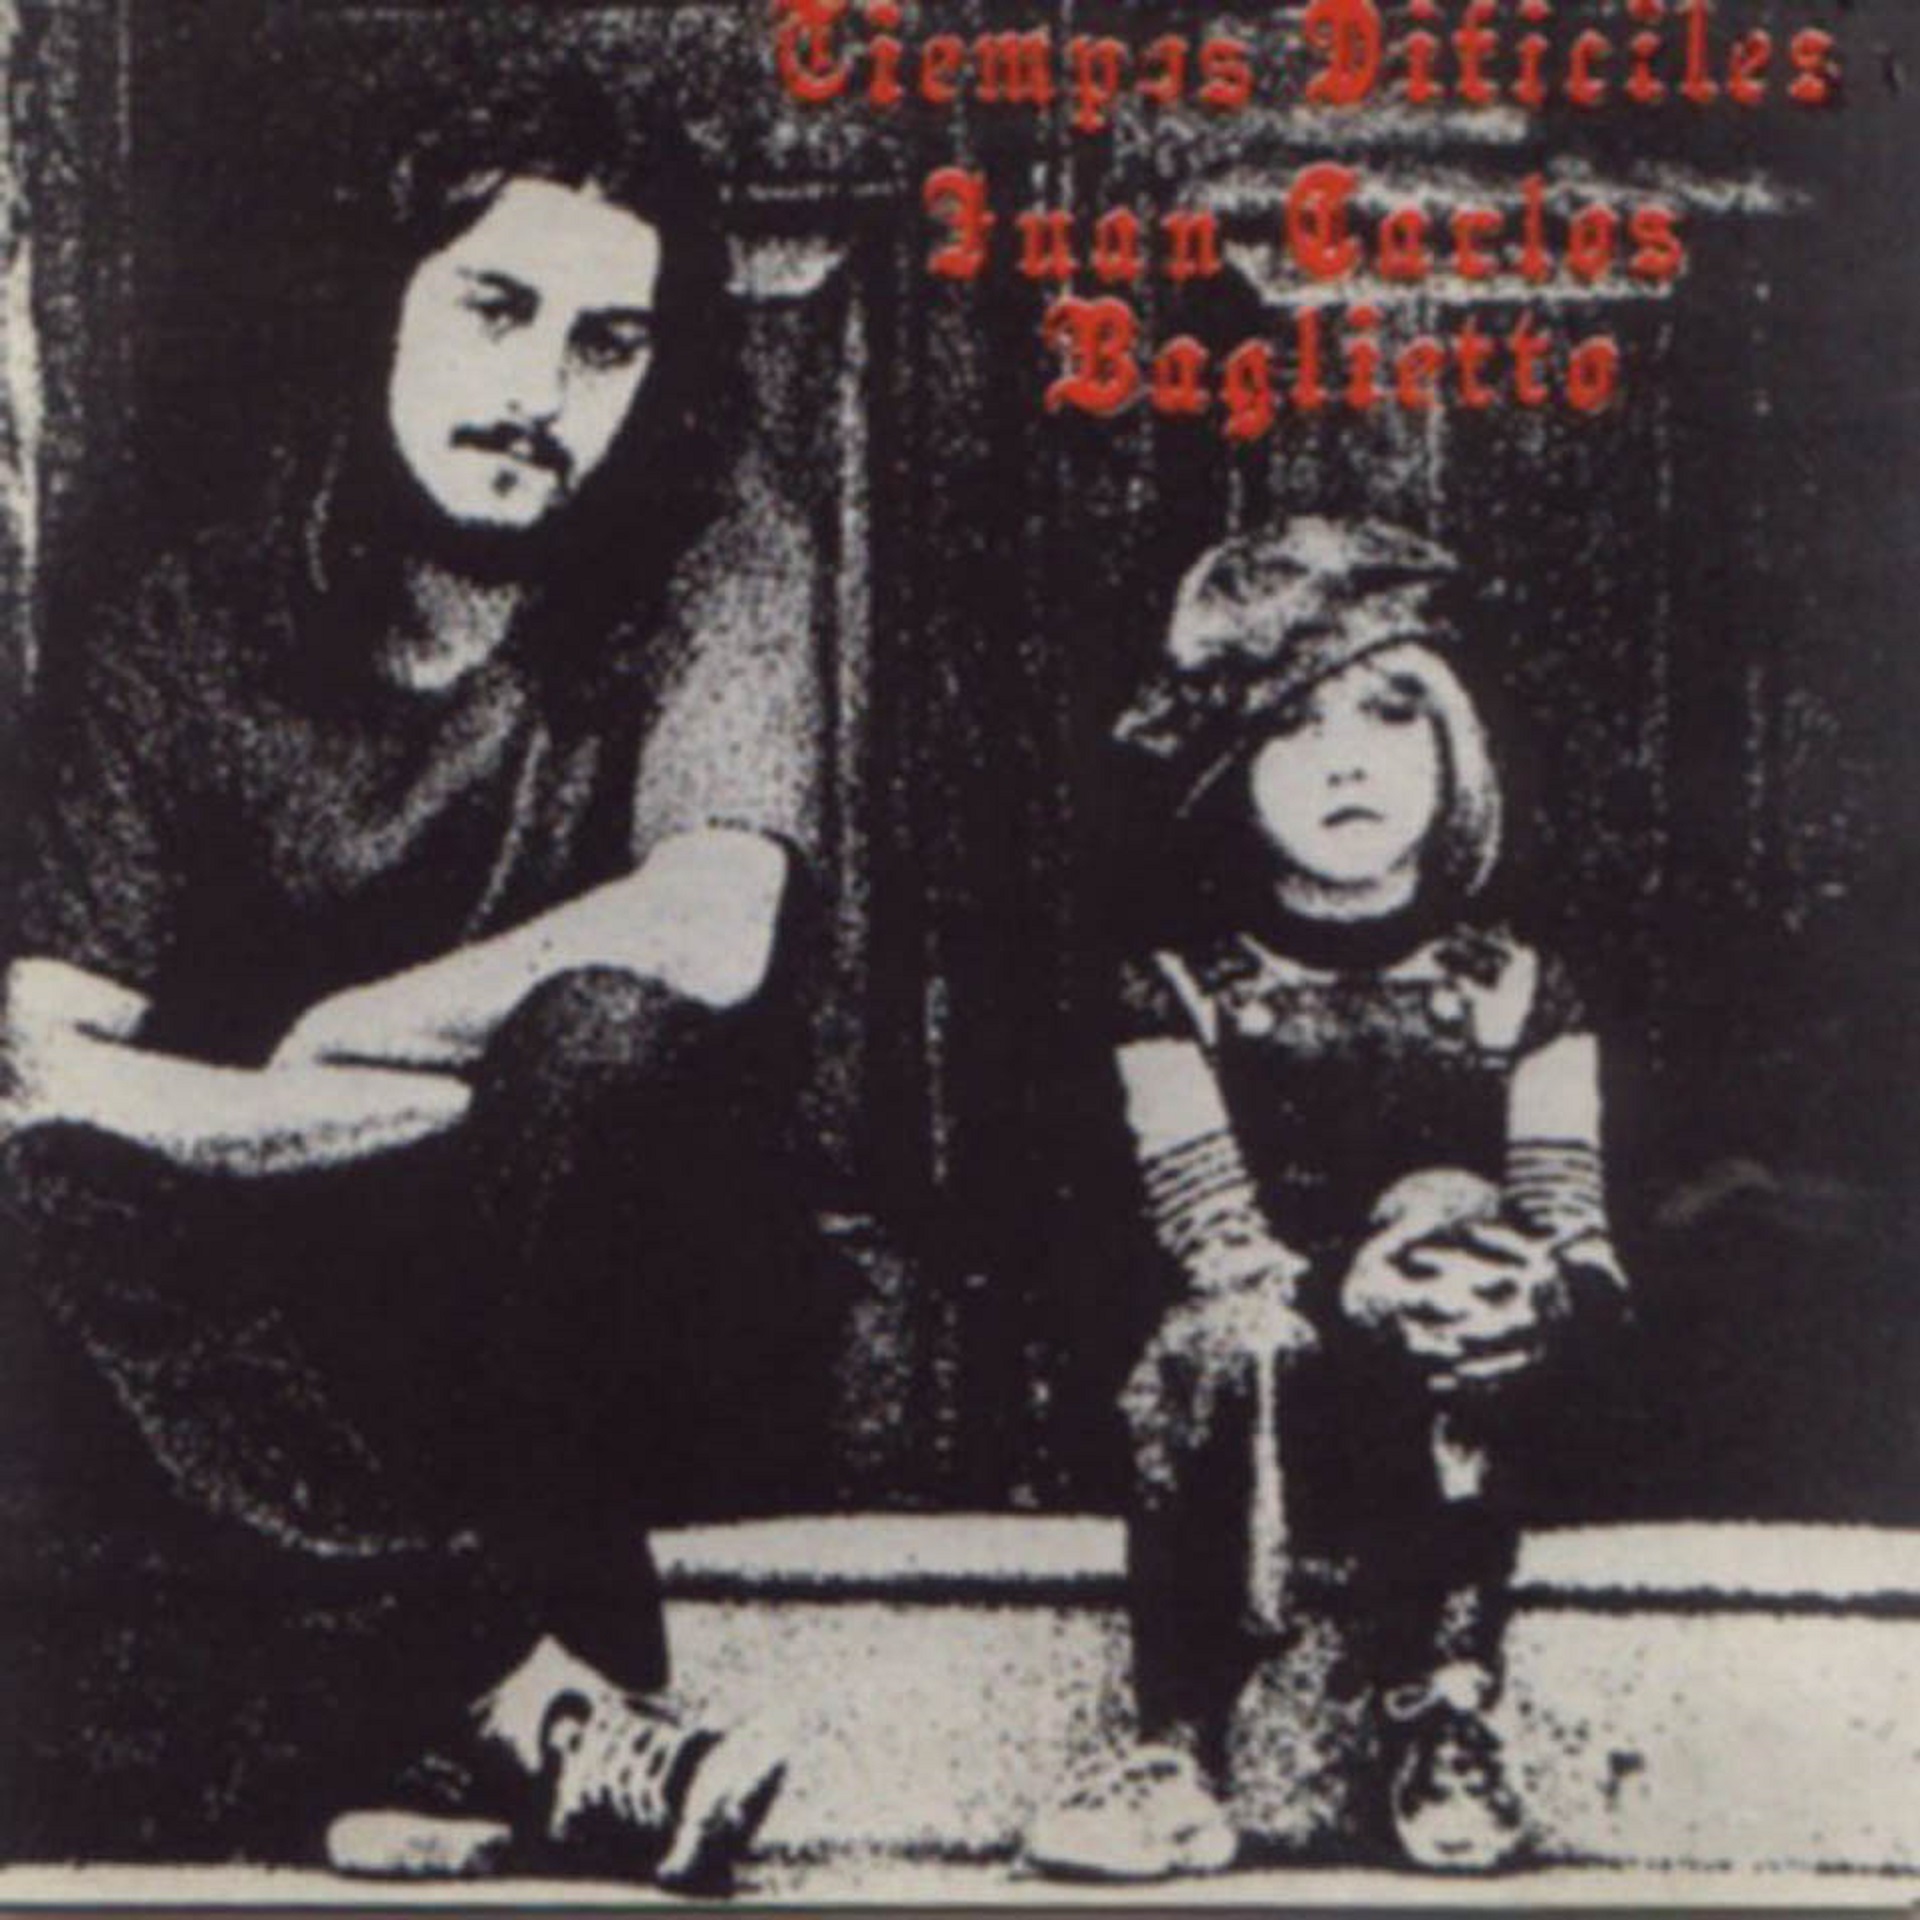 Se cumplen 40 años de "Tiempos difíciles", el primer disco de Juan Carlos Baglietto